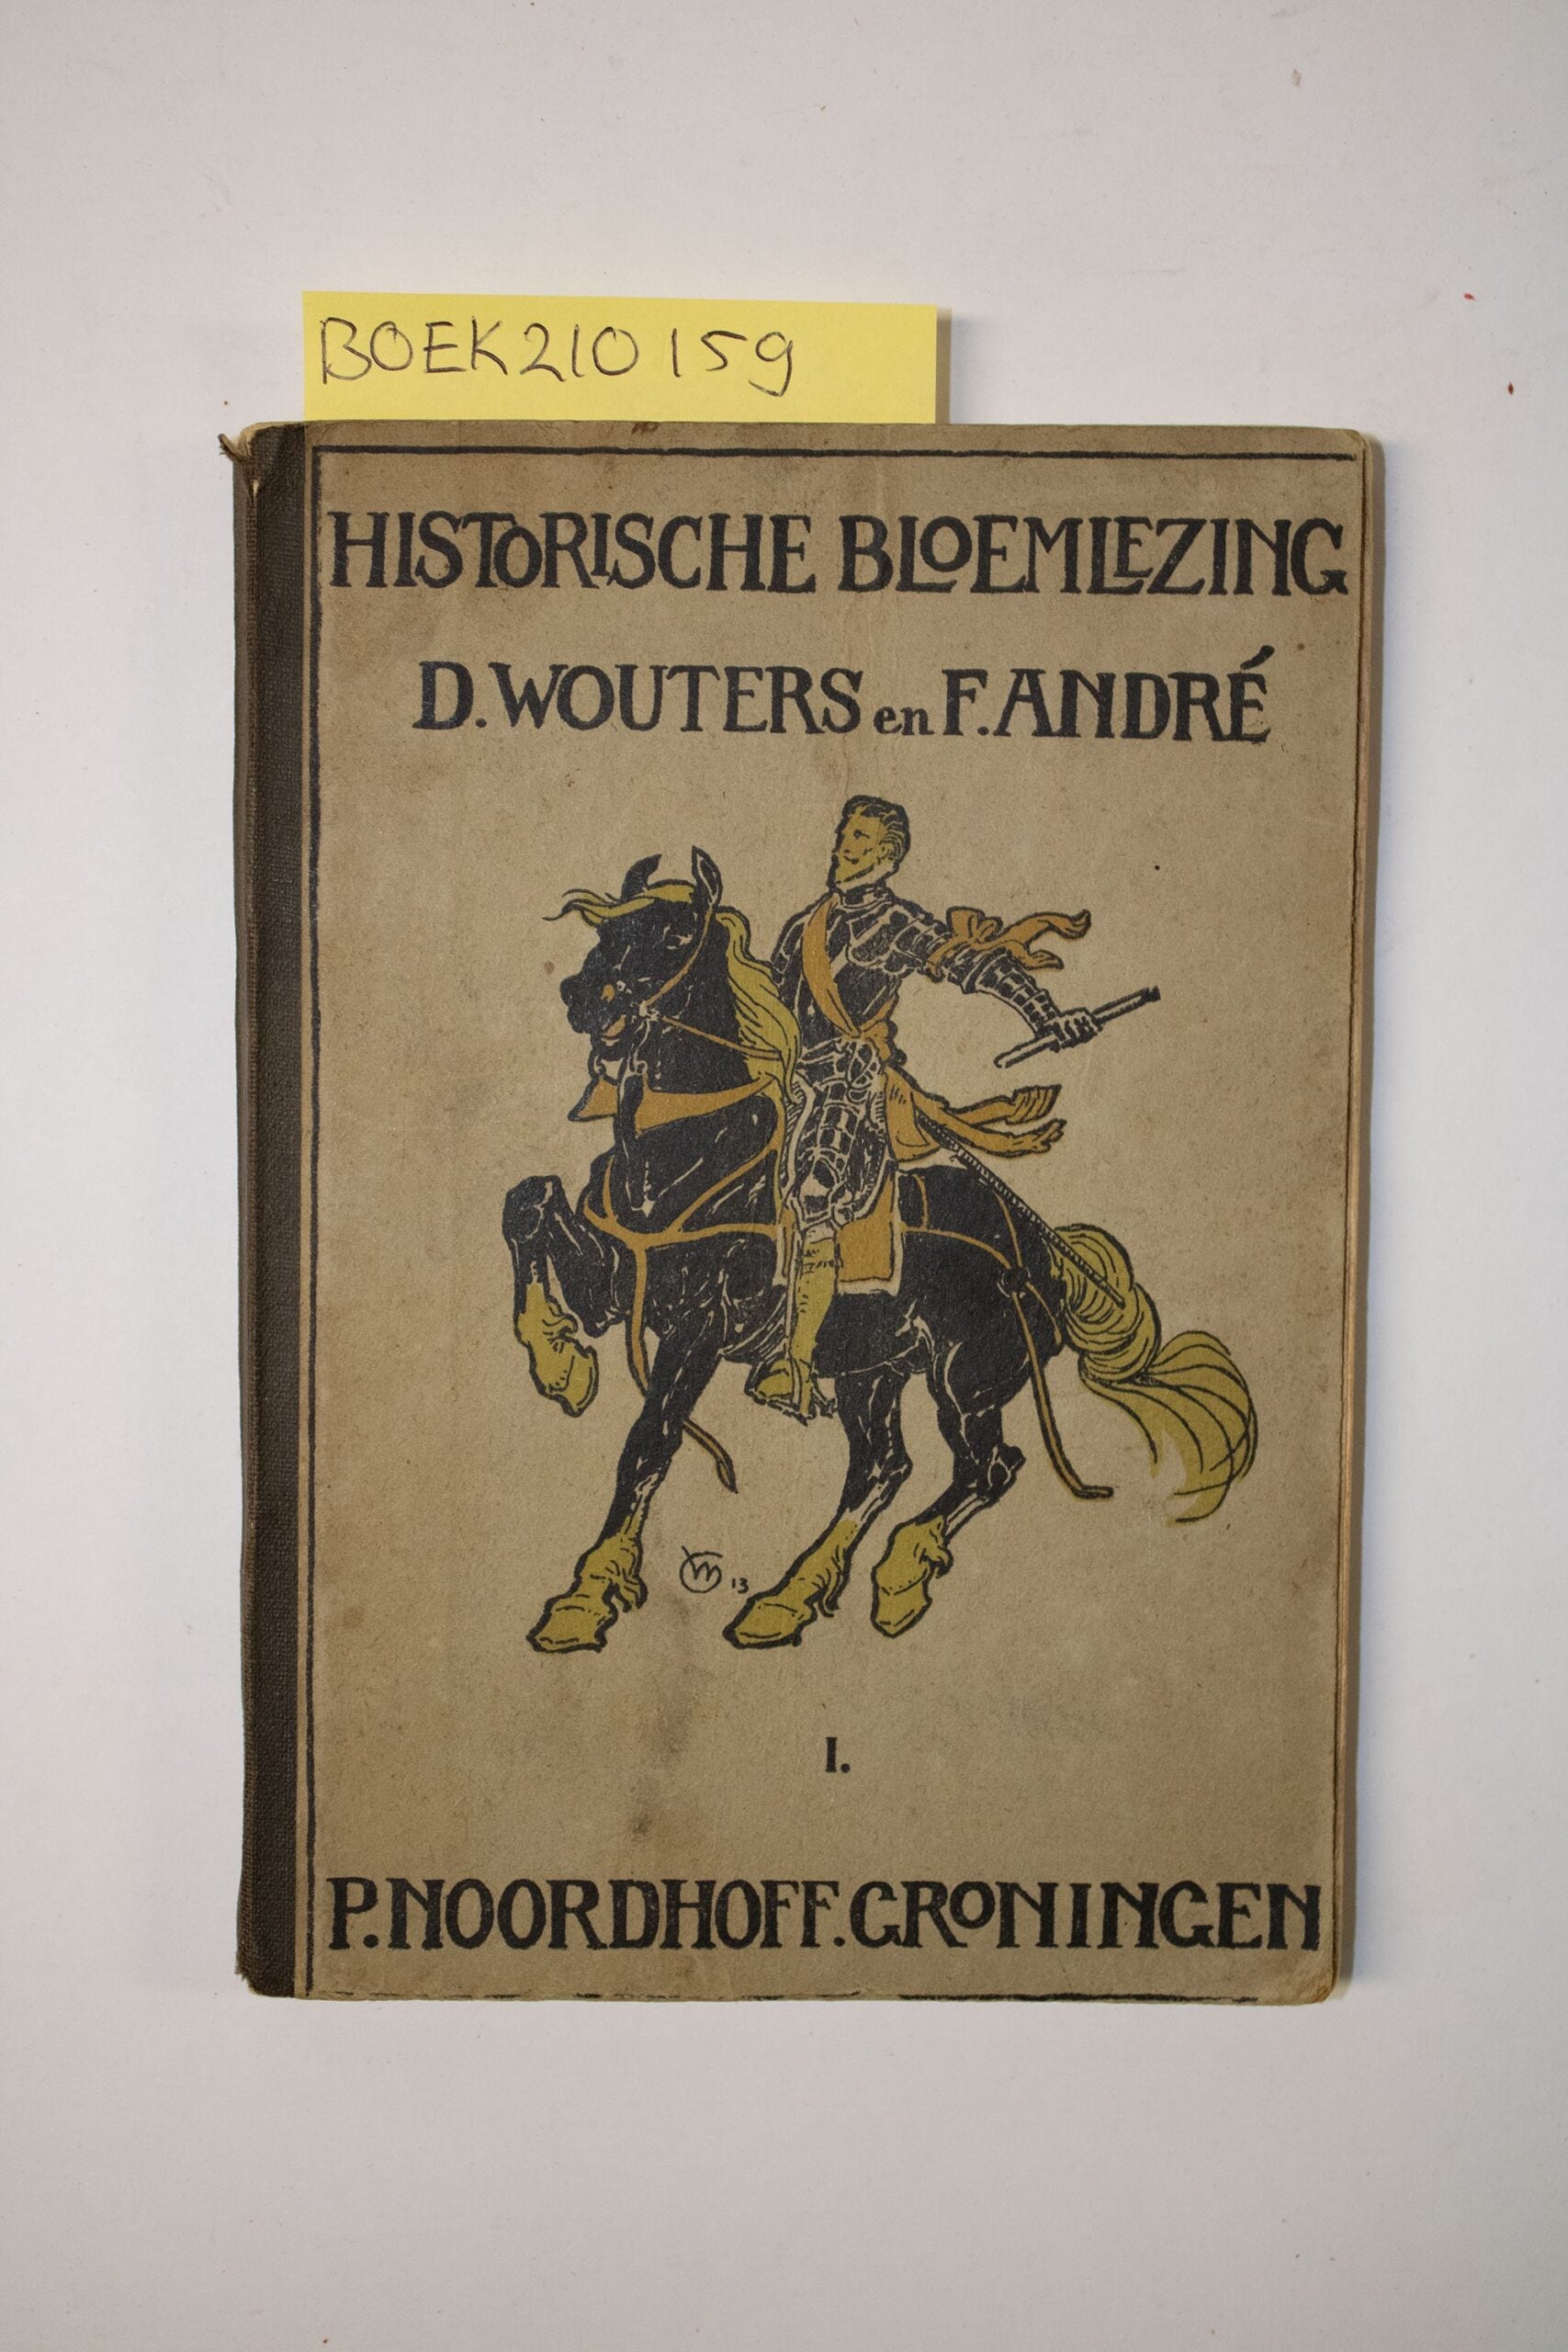 Historische bloemlezing- D. Wouters & F. André